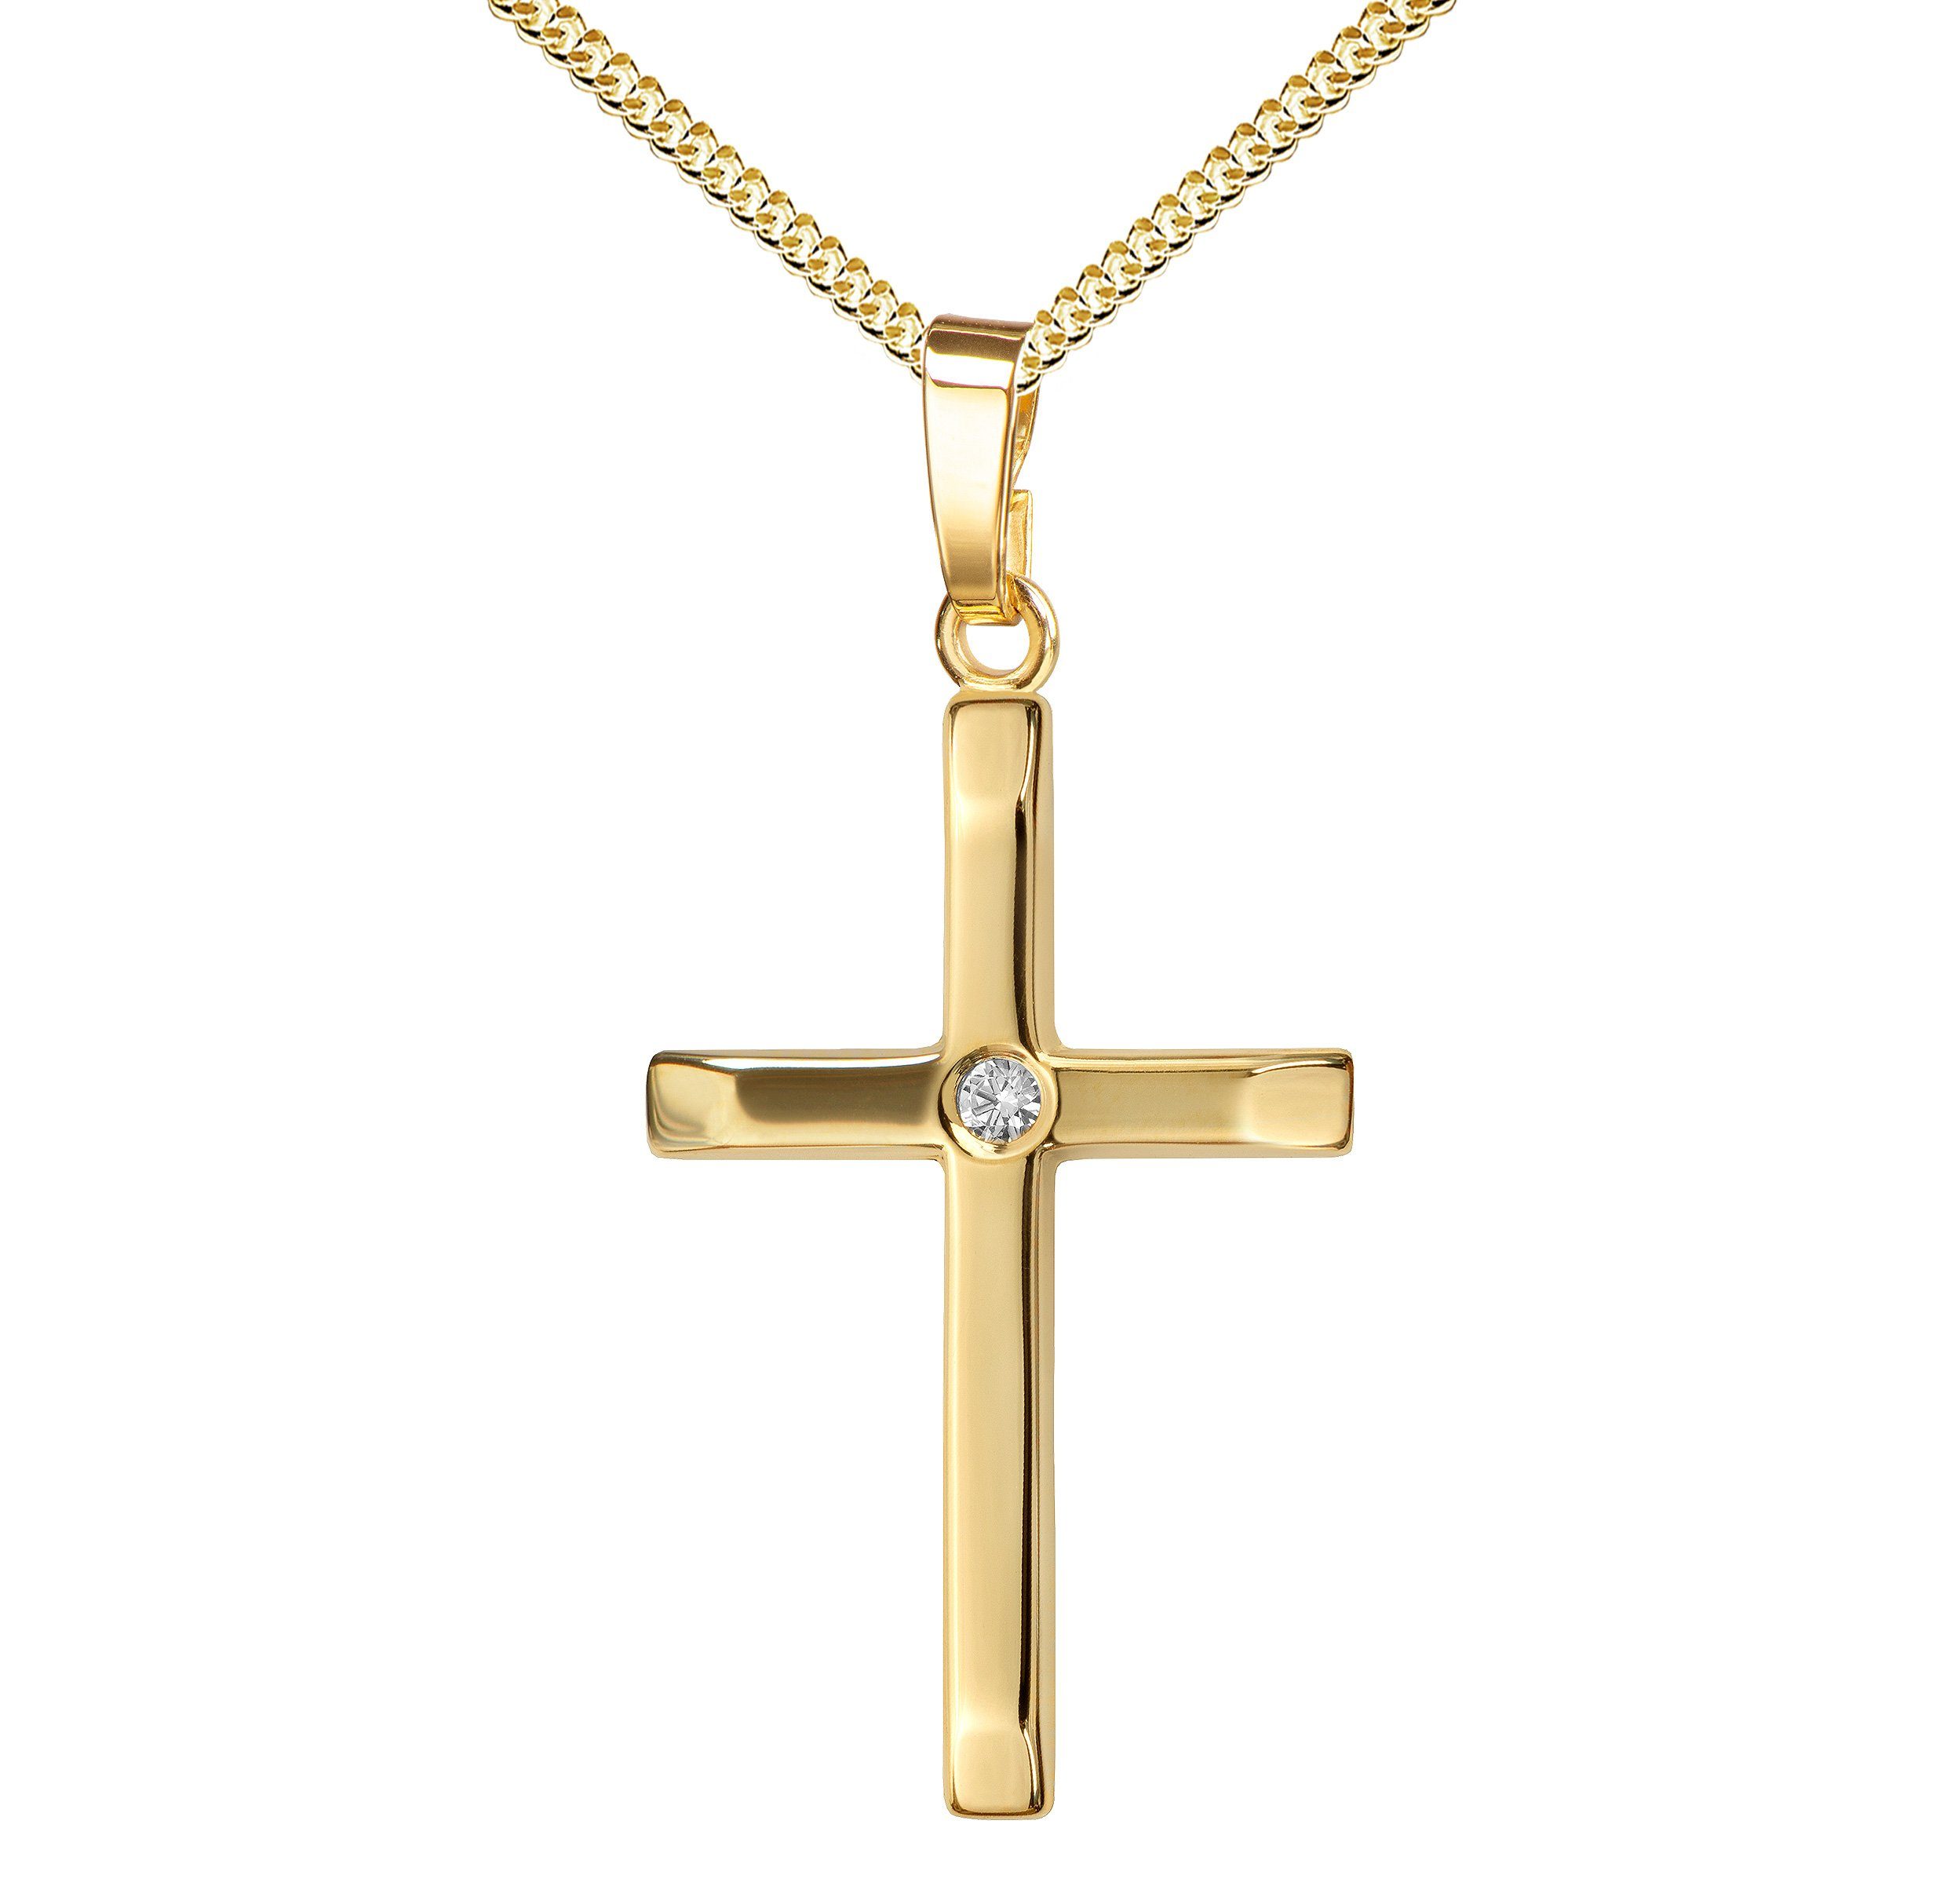 JEVELION Kreuzkette mit Brillant Kreuz Anhänger 750 Gold - Made in Germany (Goldkreuz, für Damen und Herren), Mit Kette vergoldet- Länge wählbar 36 - 70 cm.